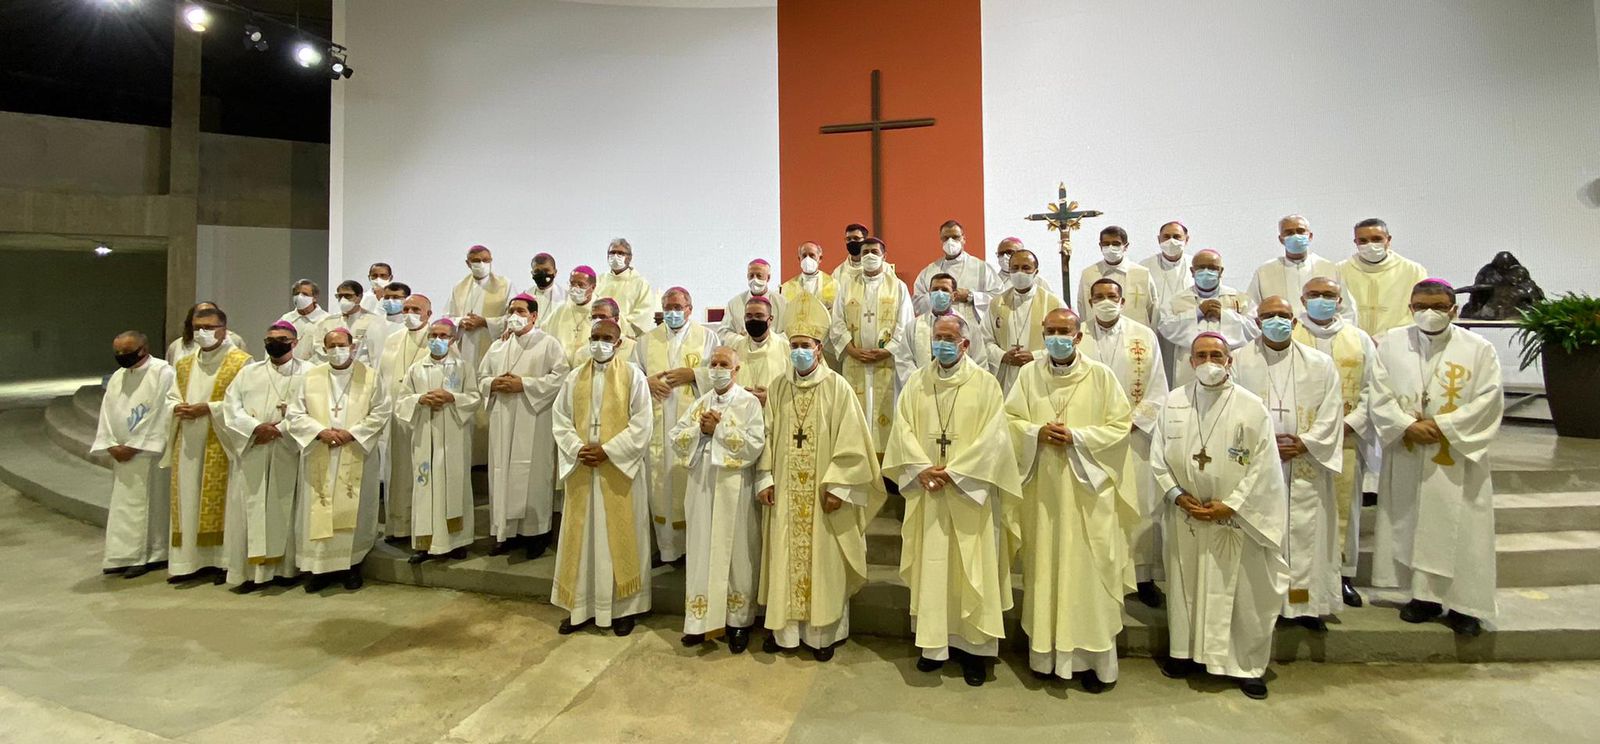 Formação do clero: Catedral Cristo Rei acolhe bispos para Celebração Eucarística